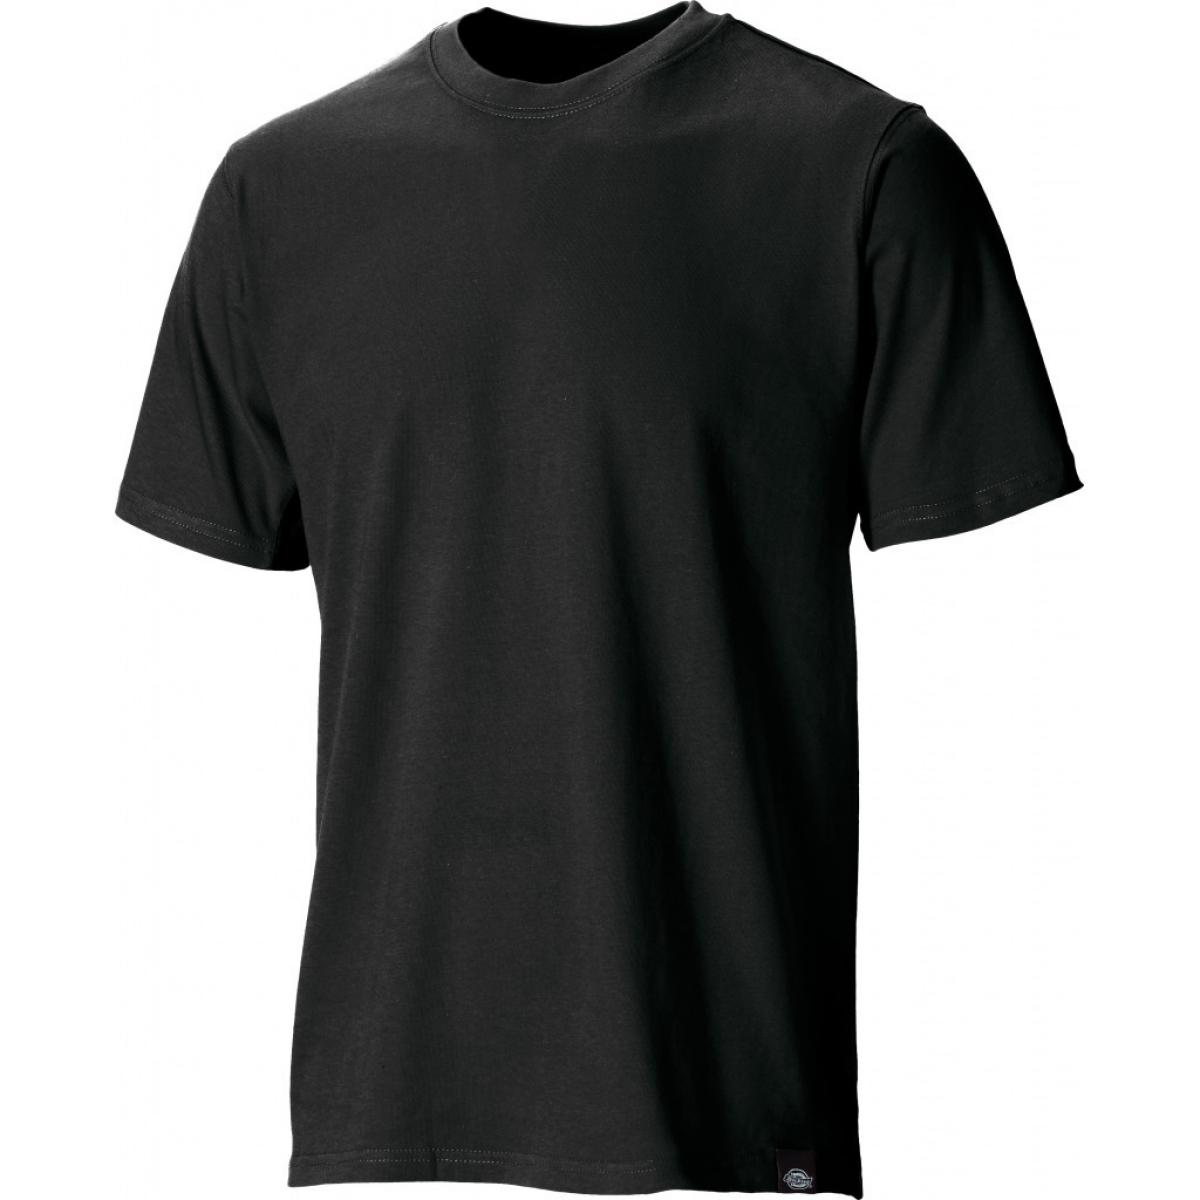 Hersteller: Dickies Herstellernummer: SH34225 Artikelbezeichnung: T-Shirt Farbe: Schwarz